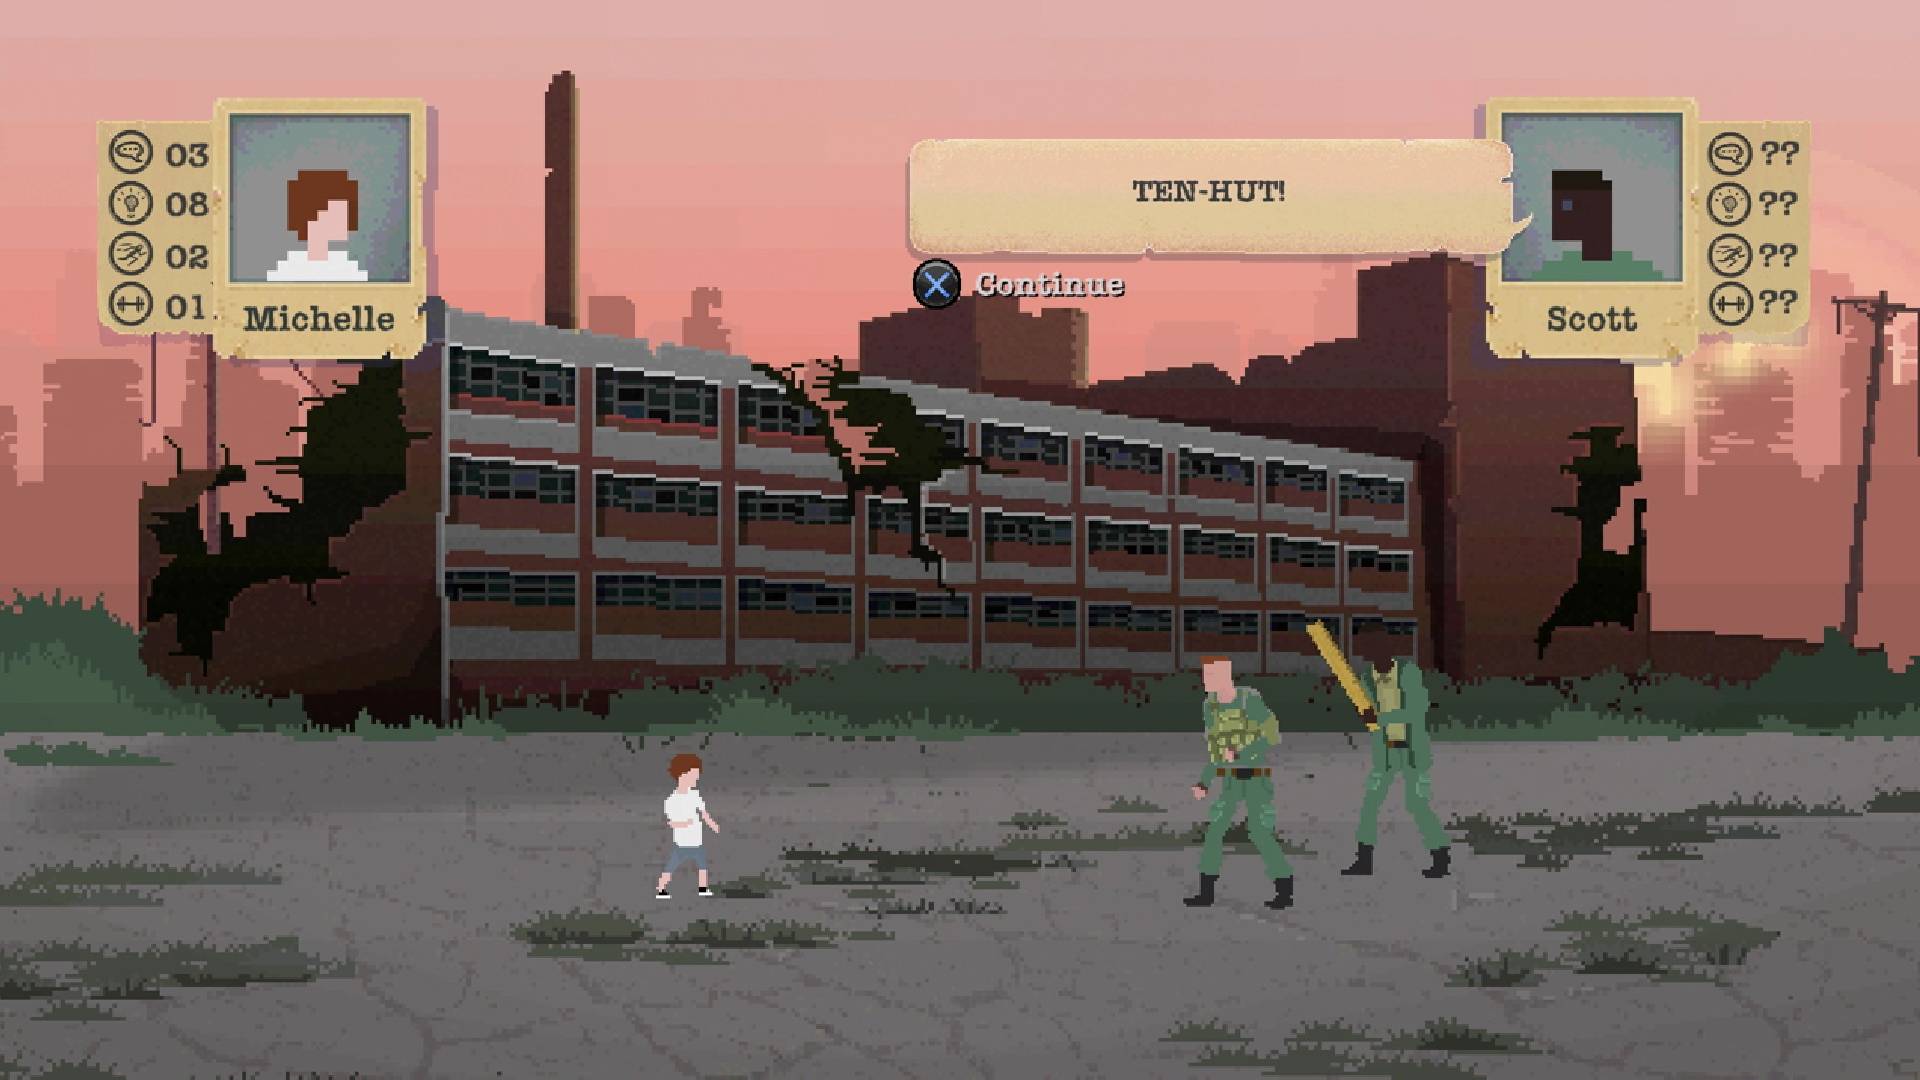 最高のポスト黙示録的なゲーム。 ピクセル化された不気味なシーンは、兵士の衣装を着た2人のキャラクターと戦っている子供を示しています